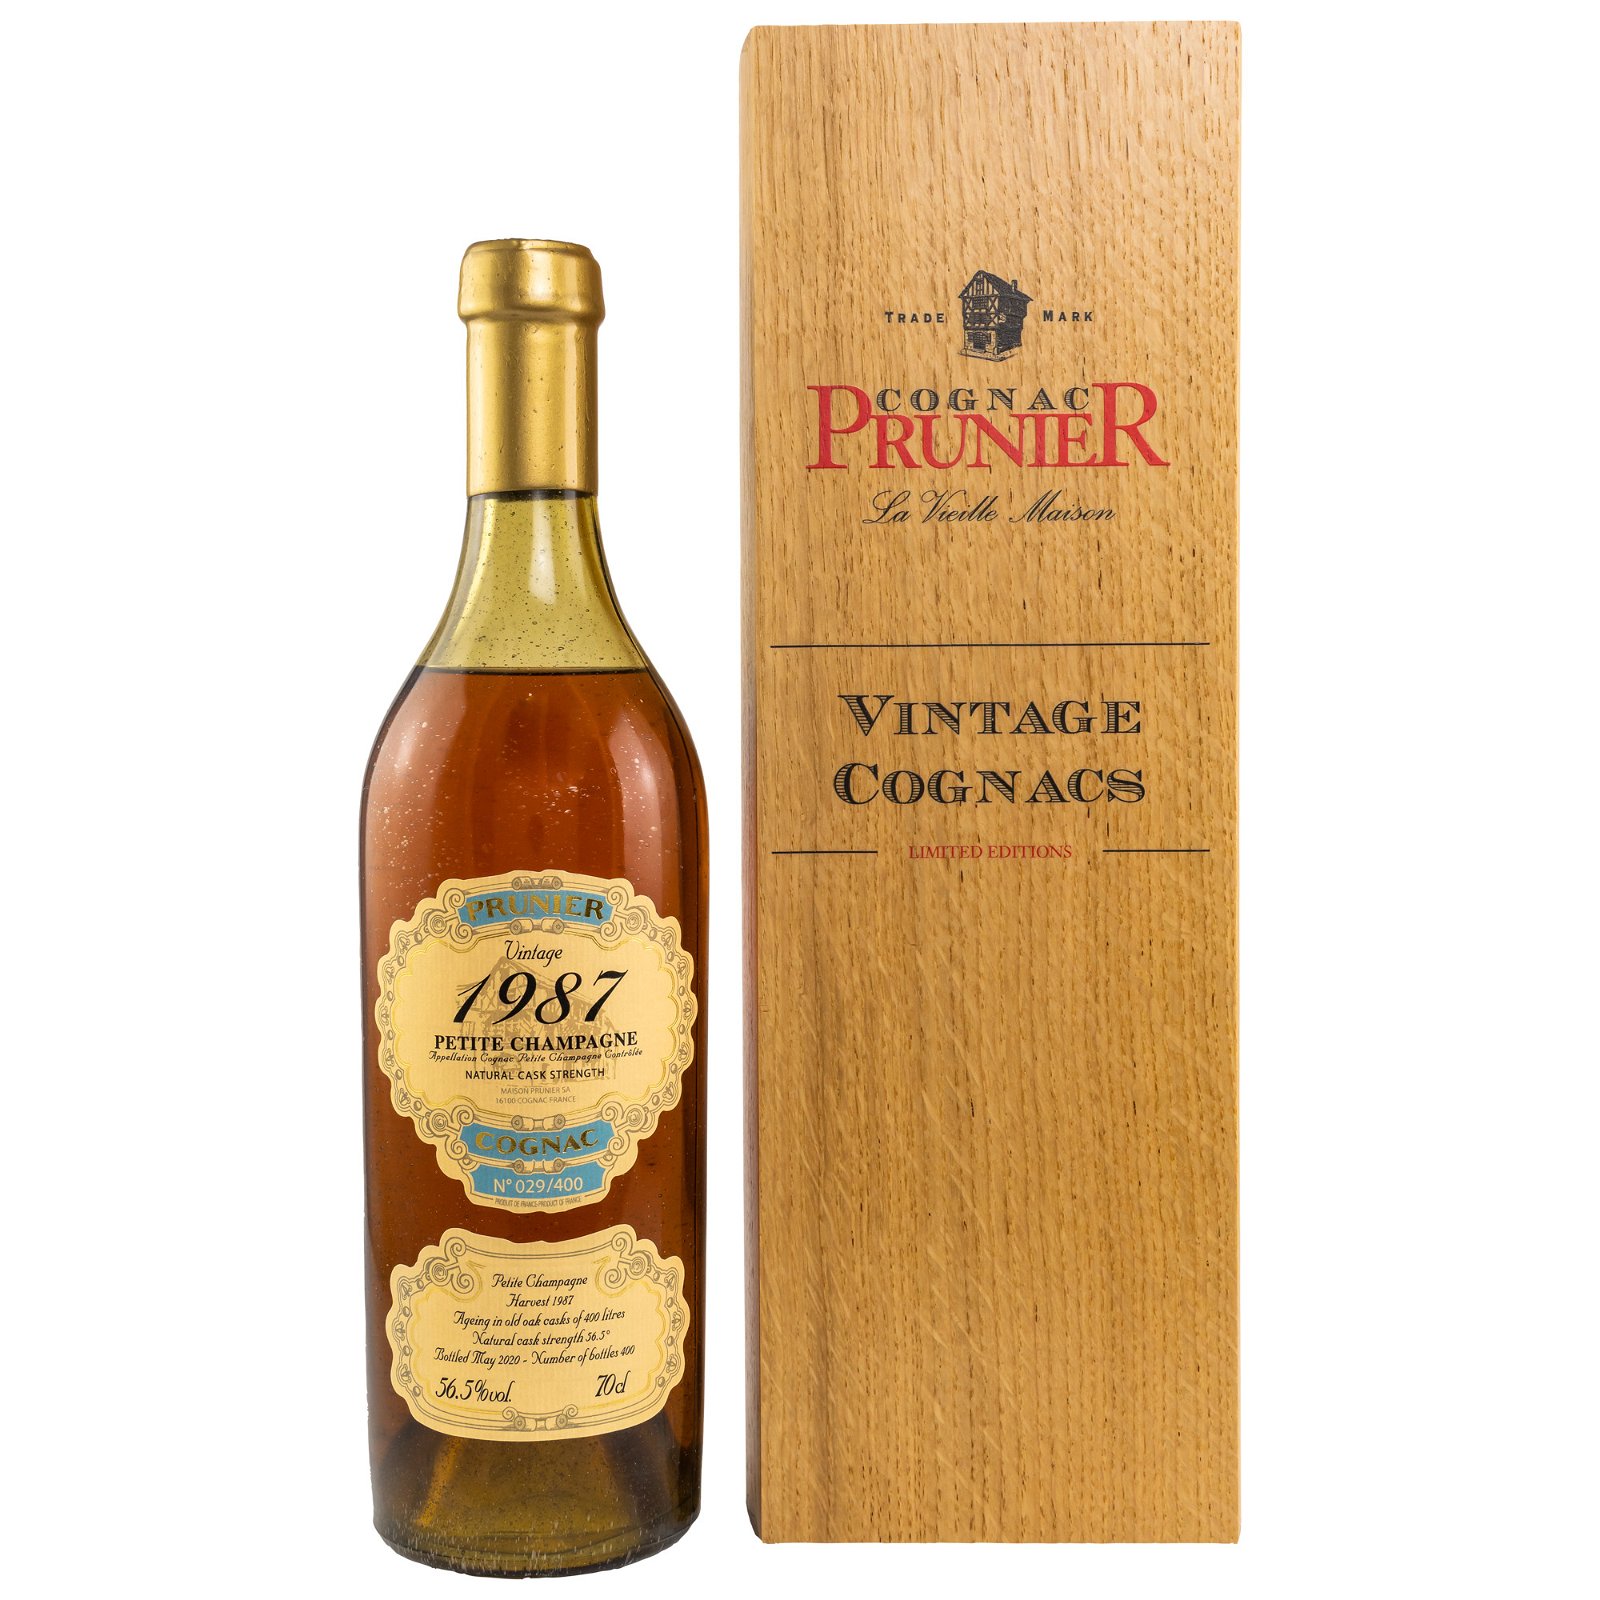 Prunier 1987/2020 Petite Champagne Cognac (Vintage Cognacs)